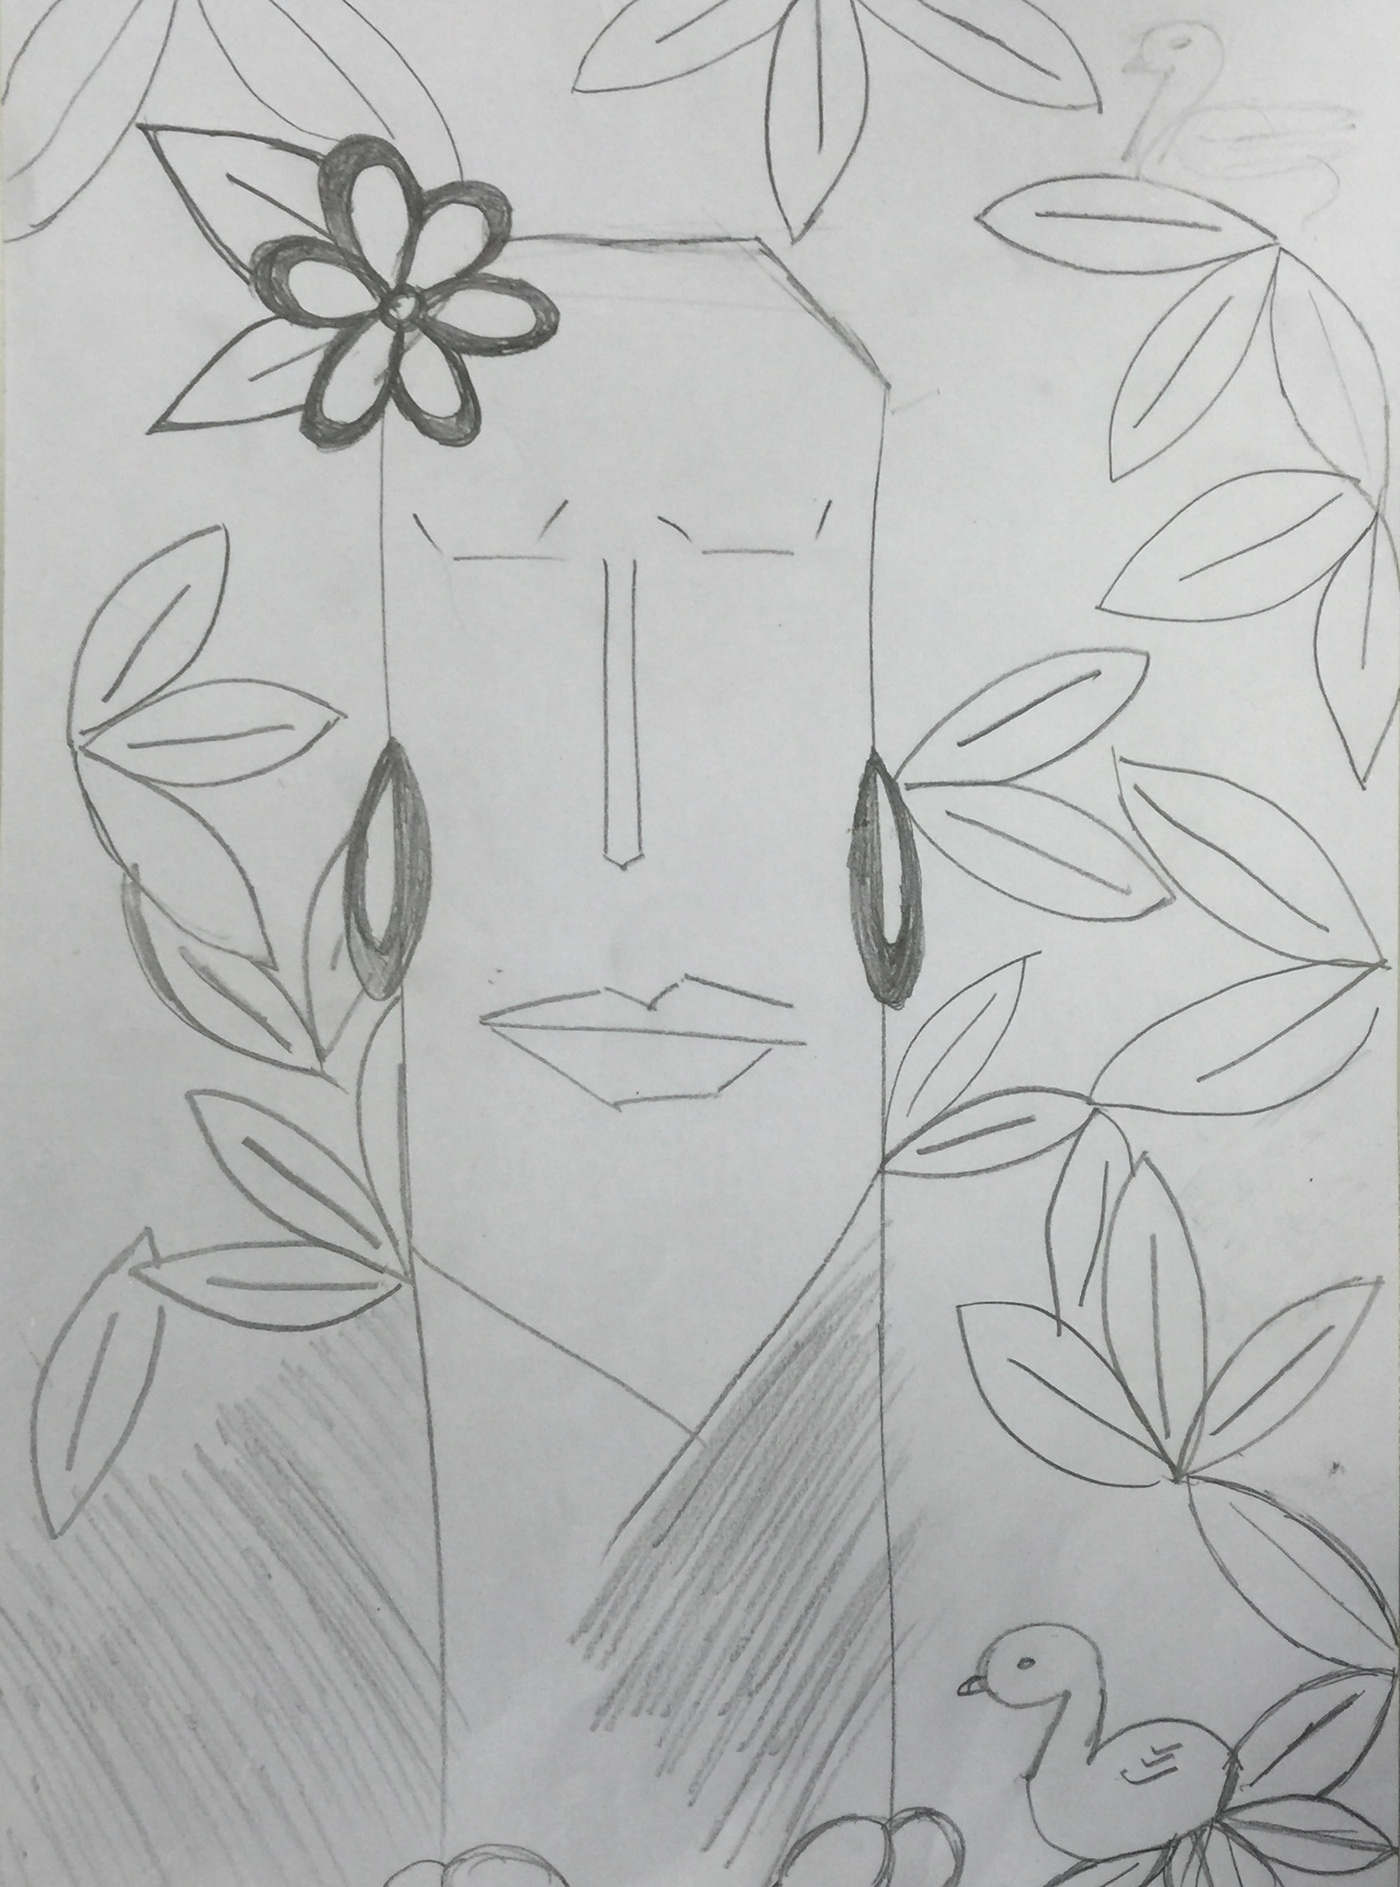 monochrome pencil sketch tribal woman